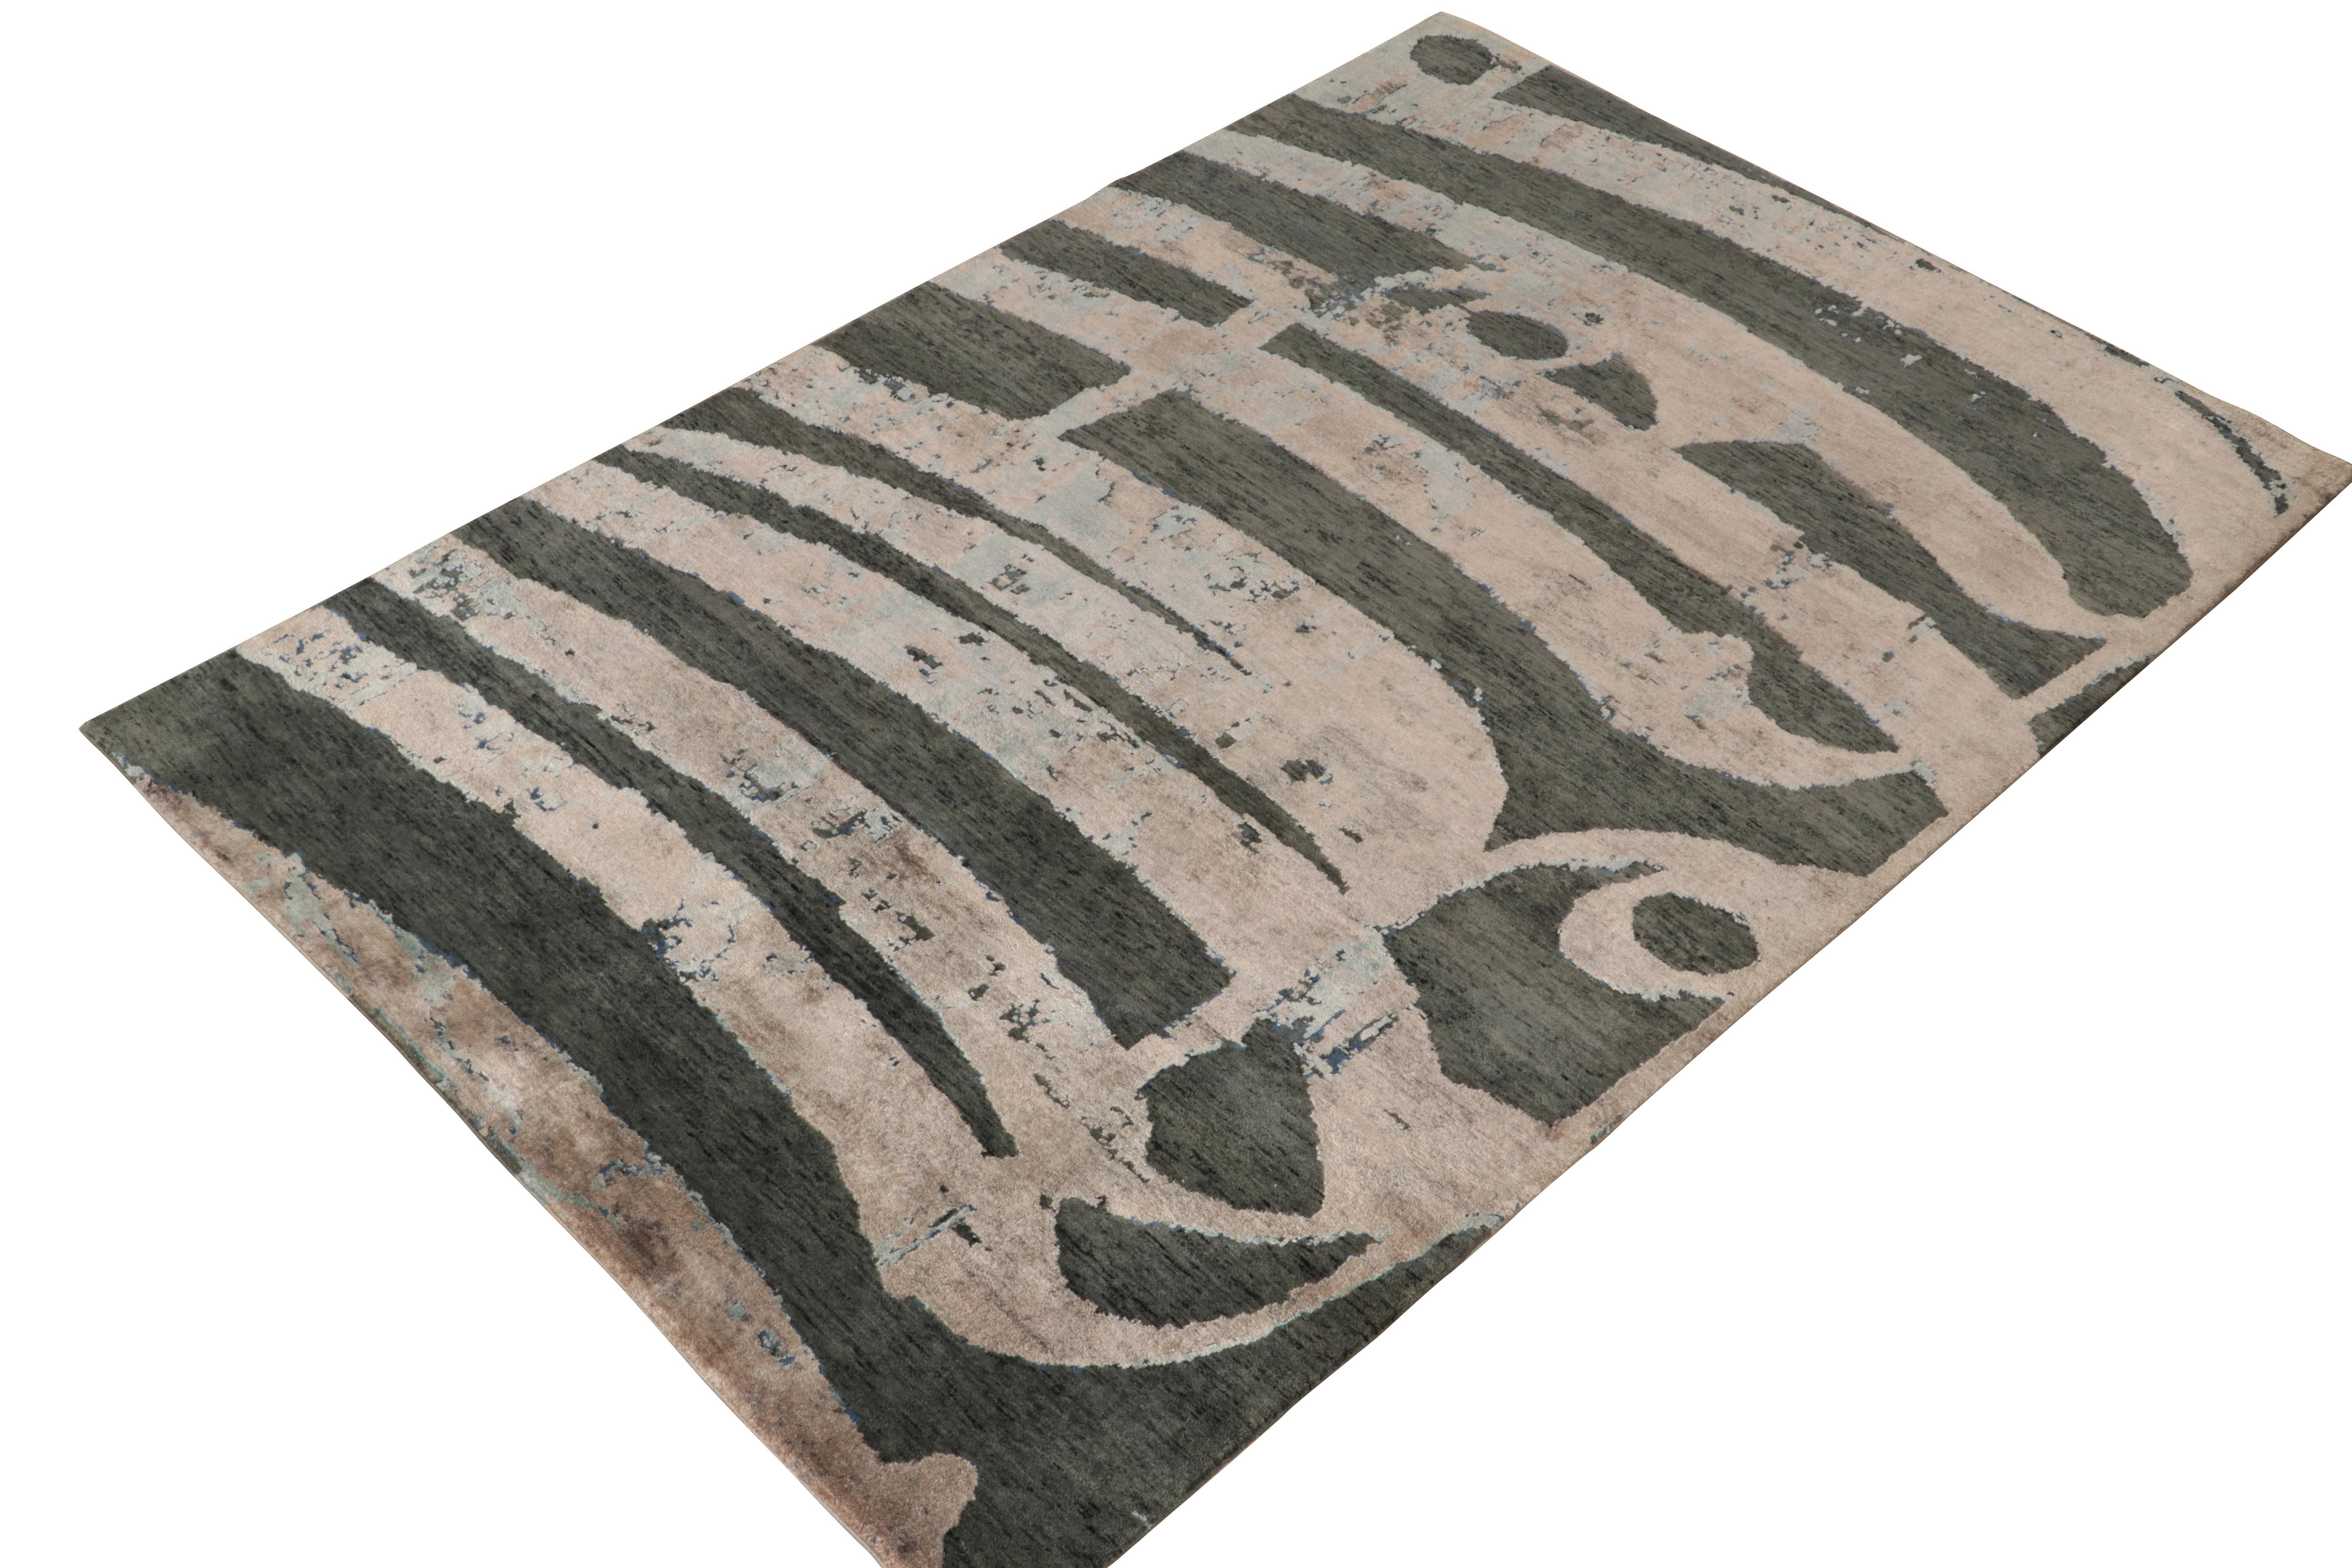 Parmi les sélections modernes et audacieuses de Rug & Kilim, un tapis 3x5 noué à la main dans un luxueux mélange de laine et de soie. La vision jouit d'une fluidité avec l'abstraction des caractères comme les signatures et la calligraphie dans des